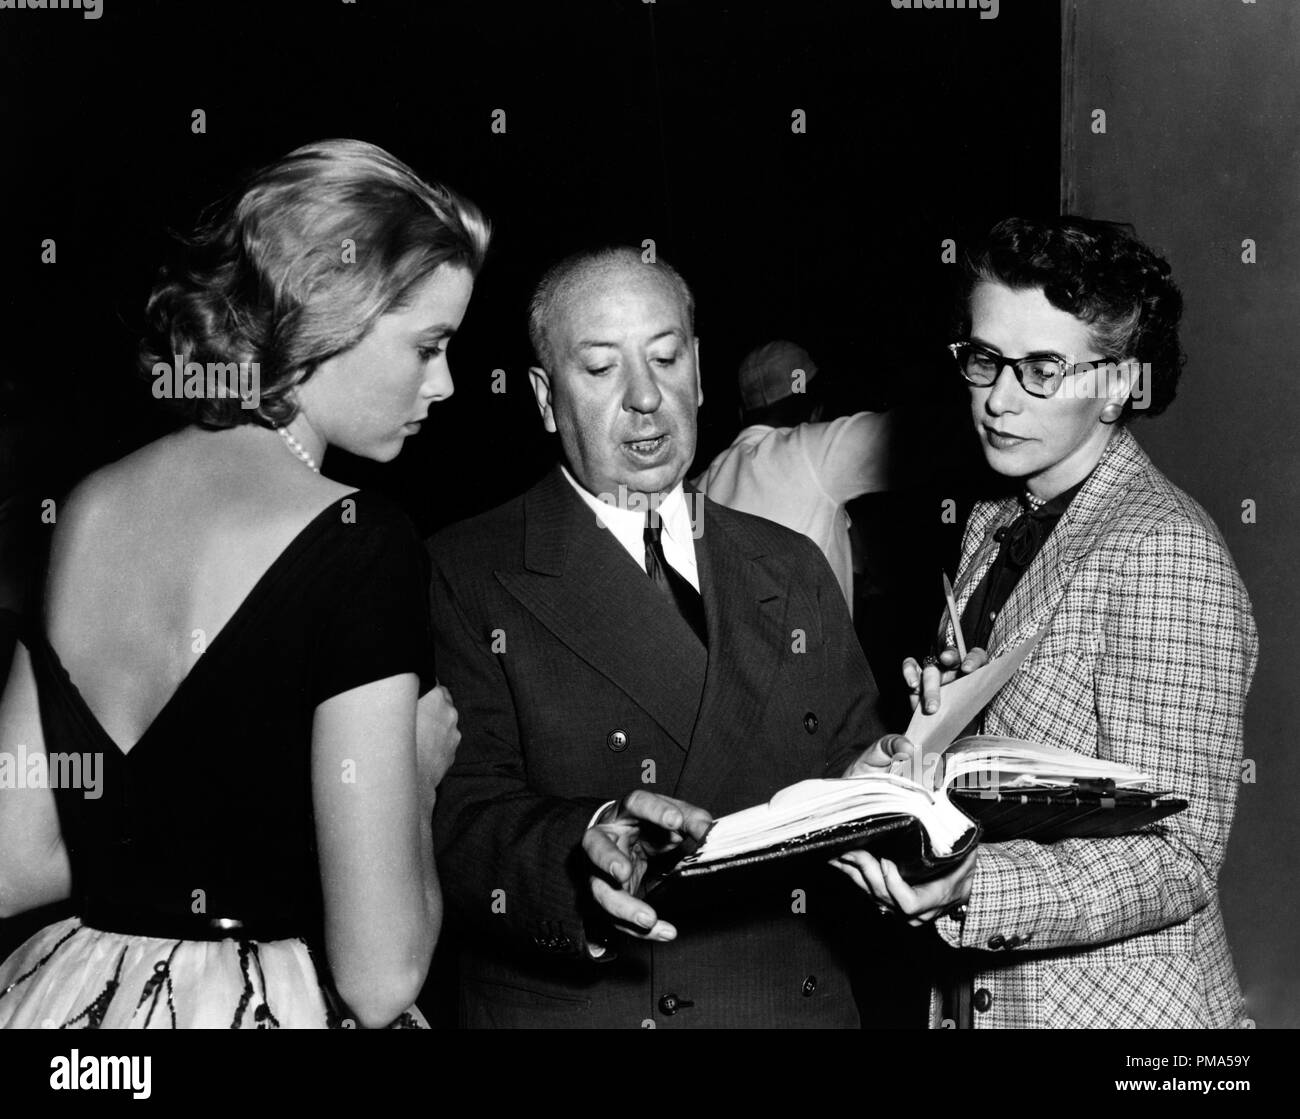 Studio publicidad todavía: "Ventana trasera" Grace Kelly, director Alfred Hitchcock 1954 Paramount Archivo de referencia # 32039 003tha Foto de stock